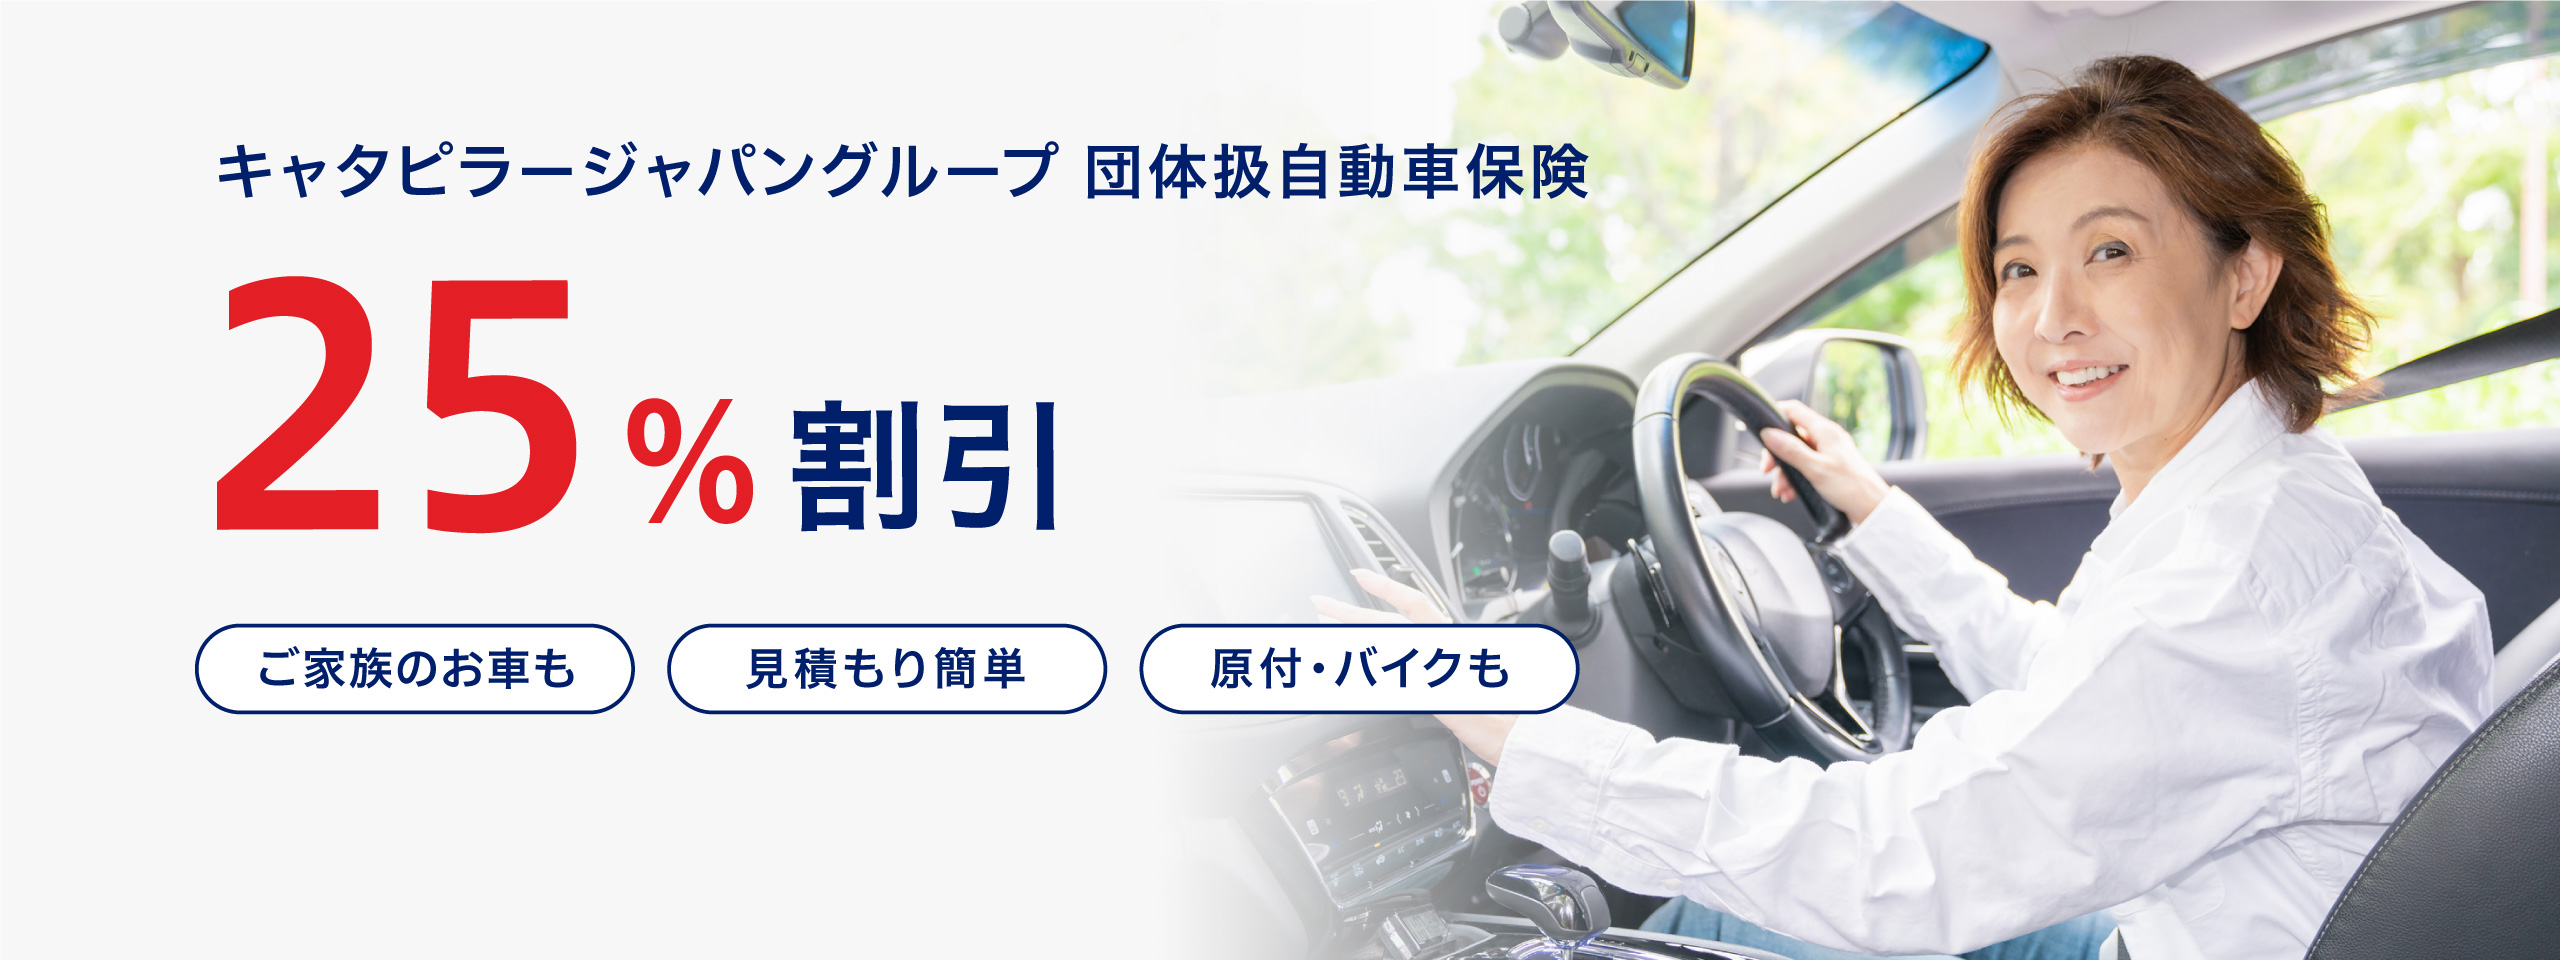 キャタピラージャパングループ団体扱自動車保険25%割引